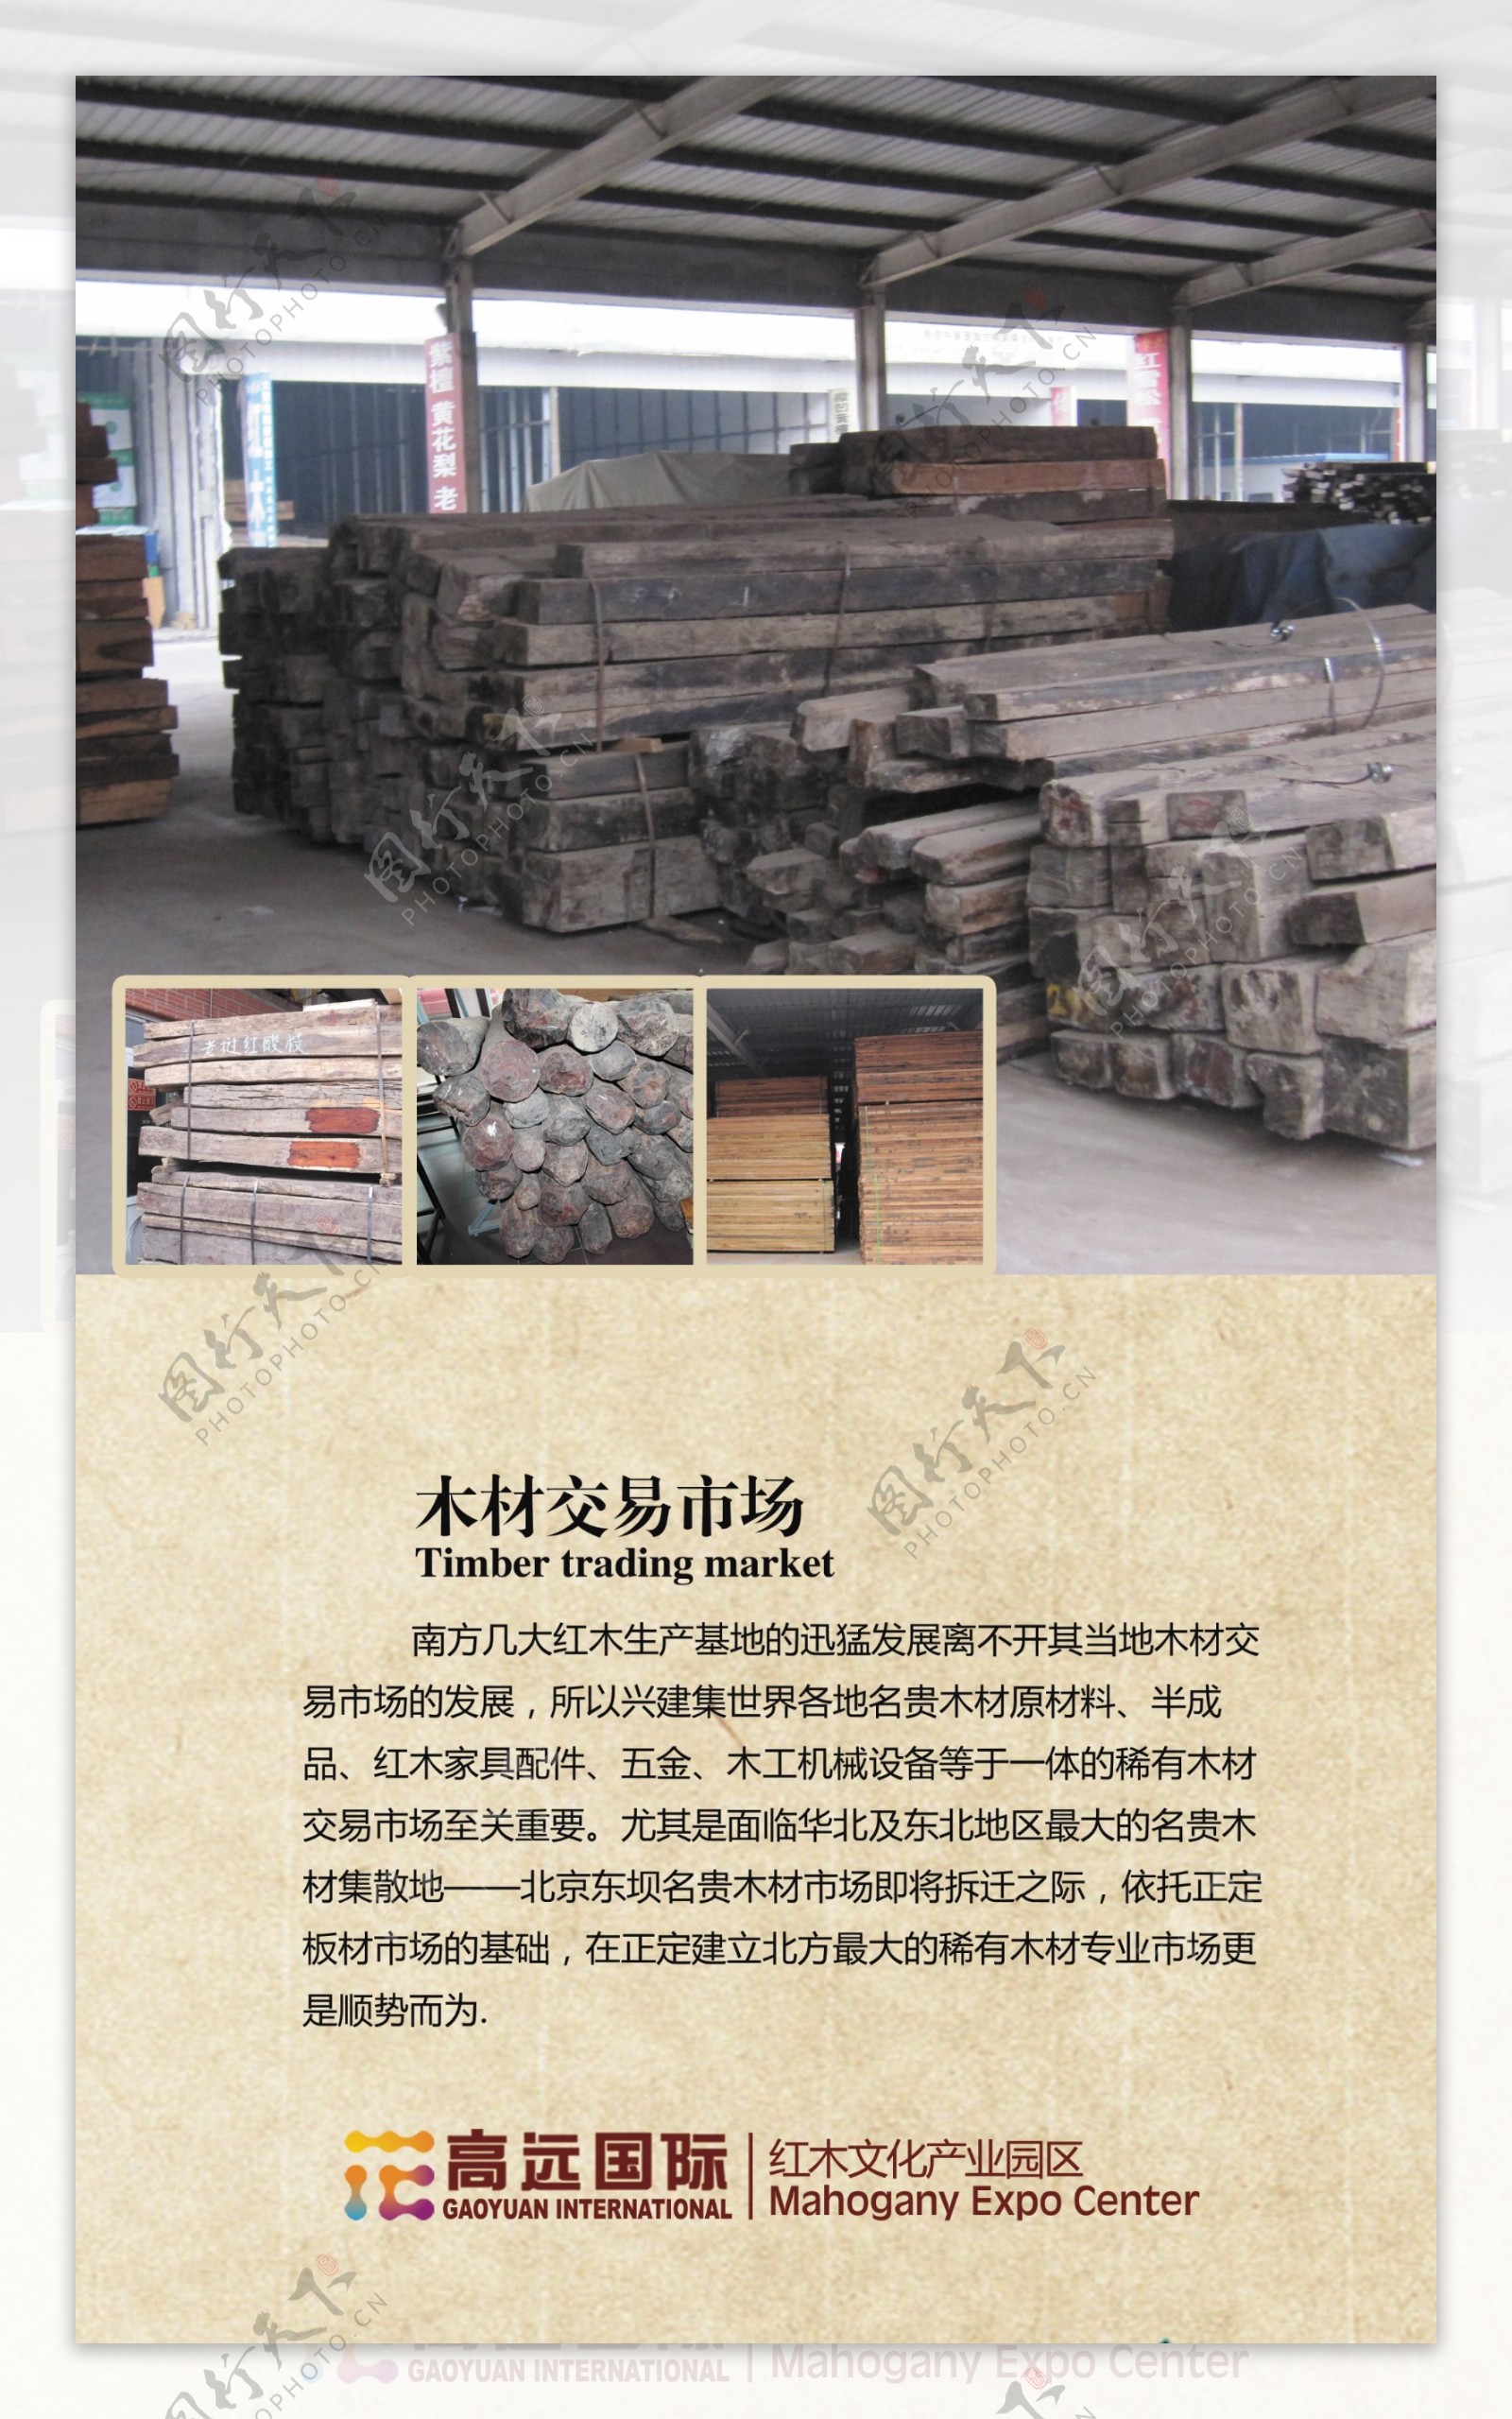 红木文化产业园区宣传册企业画册设计之二